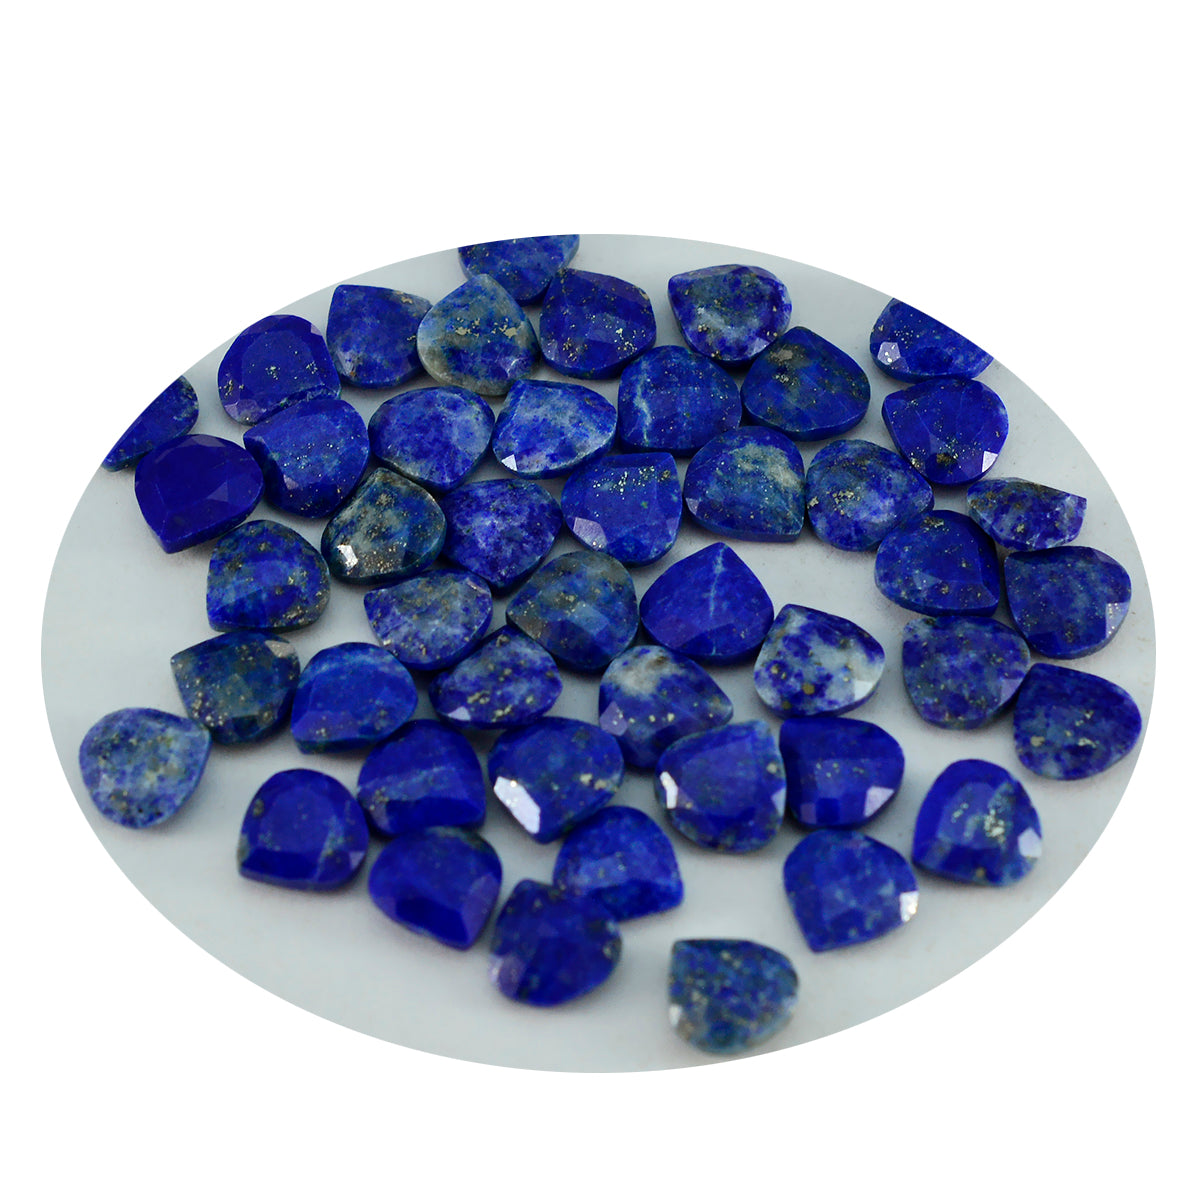 riyogems 1 шт., настоящие синие лазуриты, ограненные 7x7 мм, в форме сердца, фантастическое качество, свободные драгоценные камни